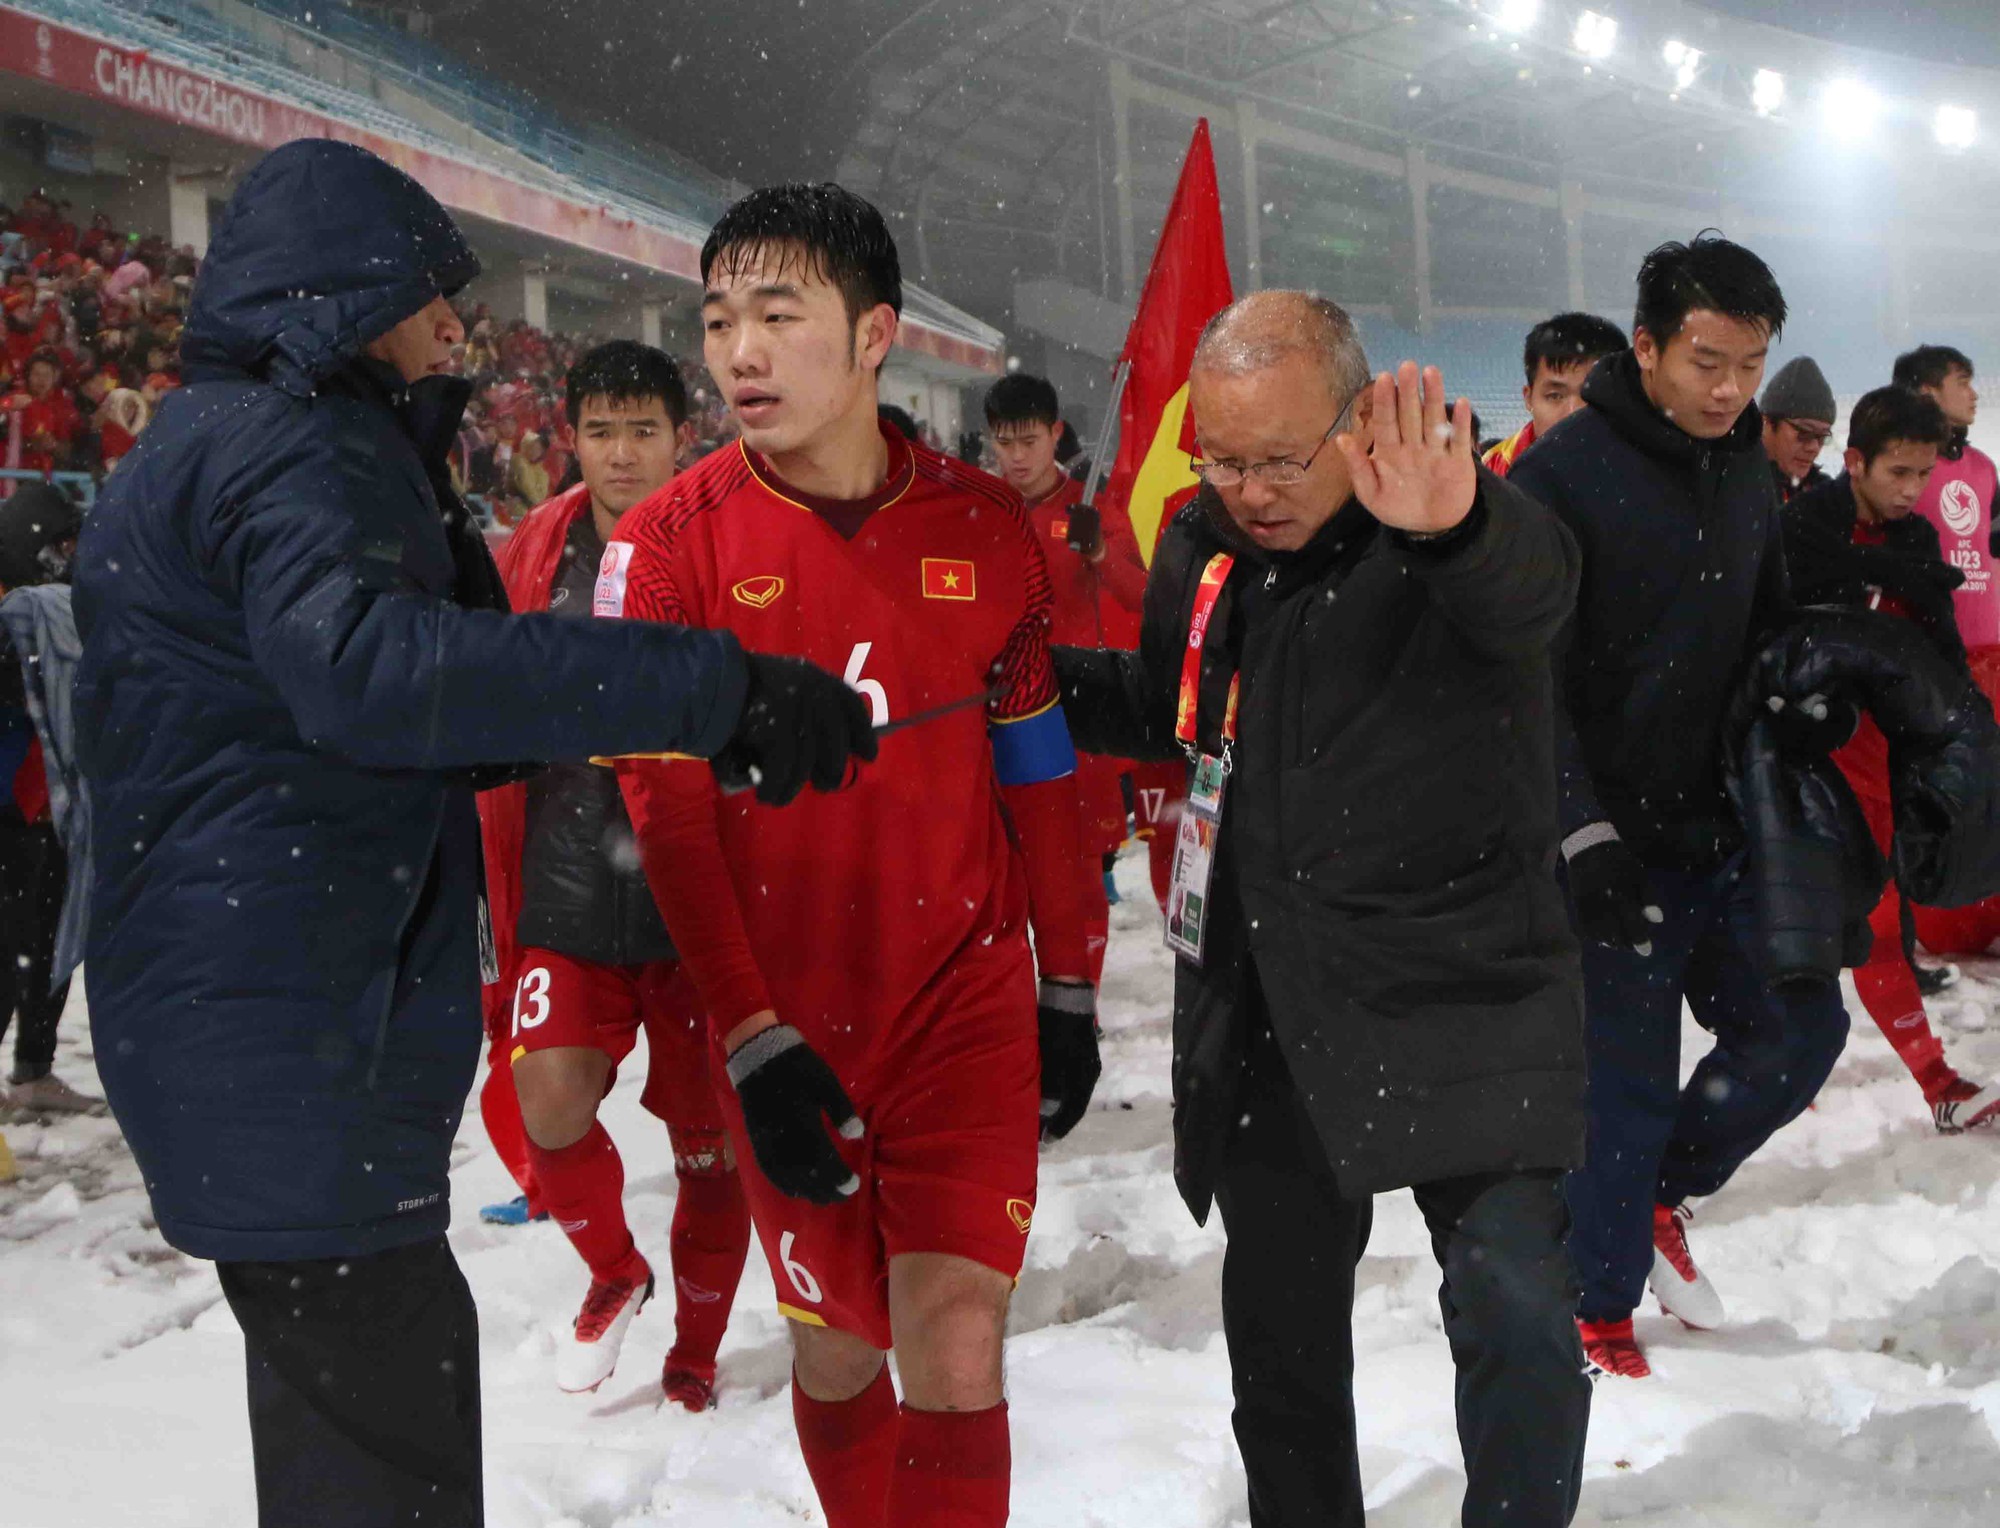 HLV Park Hang Seo dẫn các học trò đi cám ơn CĐV. Chiến lược gia người Hàn Quốc đã làm rạng danh bóng đá Việt Nam sau 3 tháng cầm quân. Ảnh: Anh Khoa.